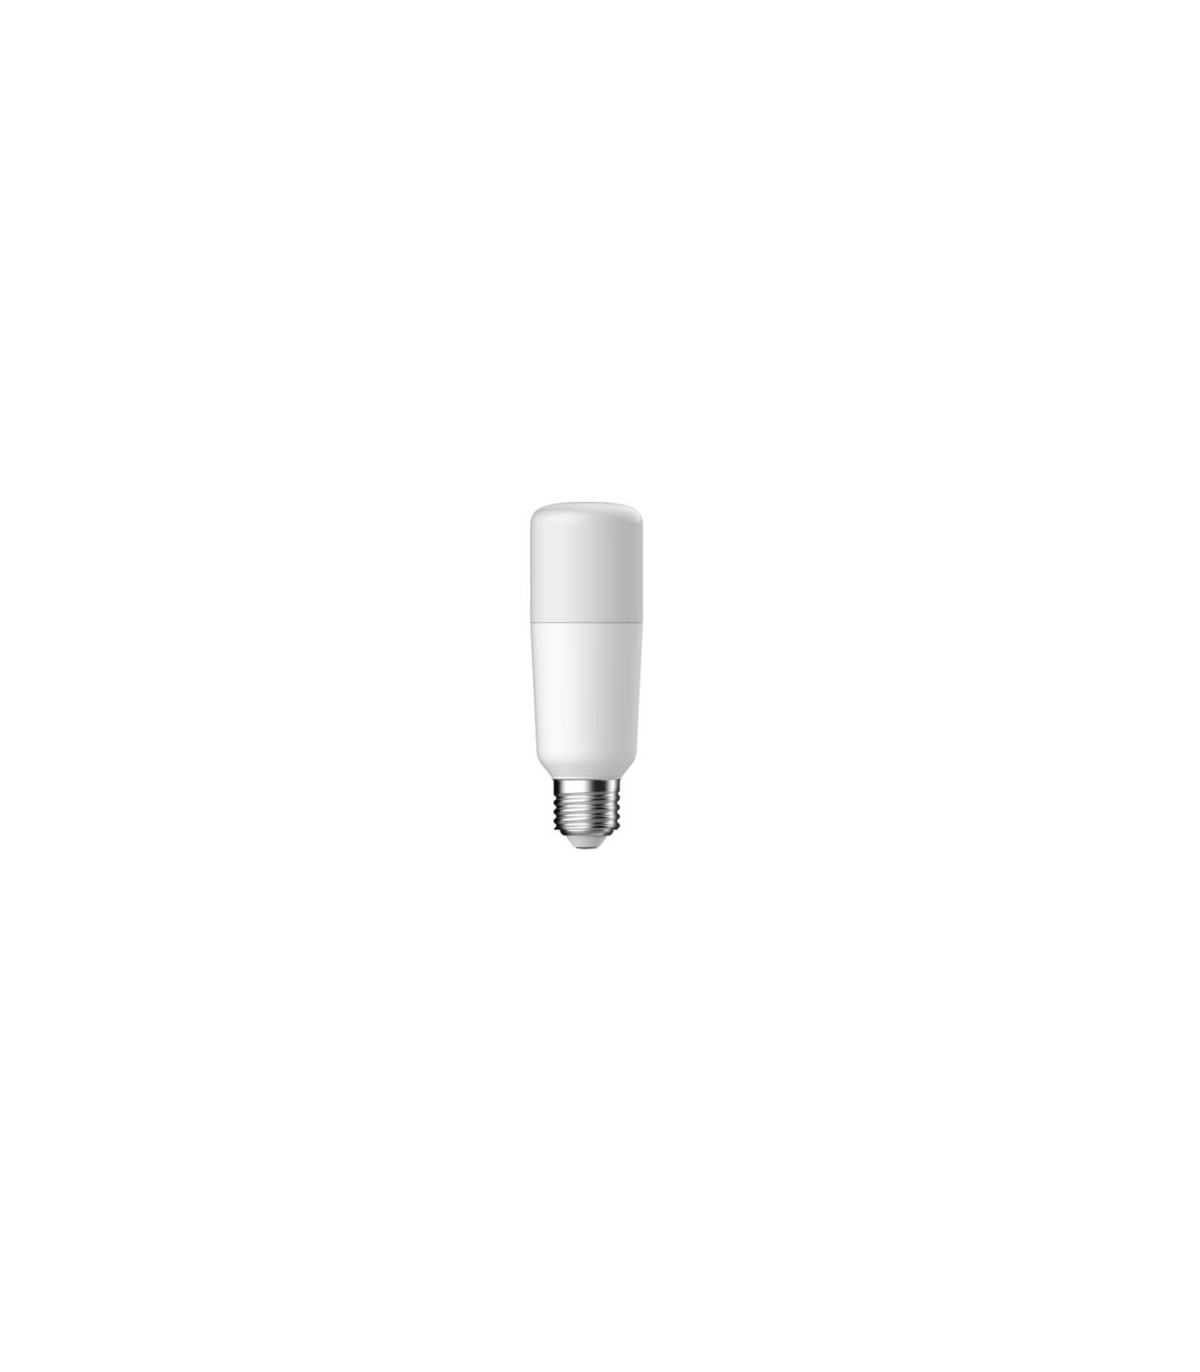 Ampoule tubulaire GE LED bright stik 15w 3000K 1521lm culot E27 574108